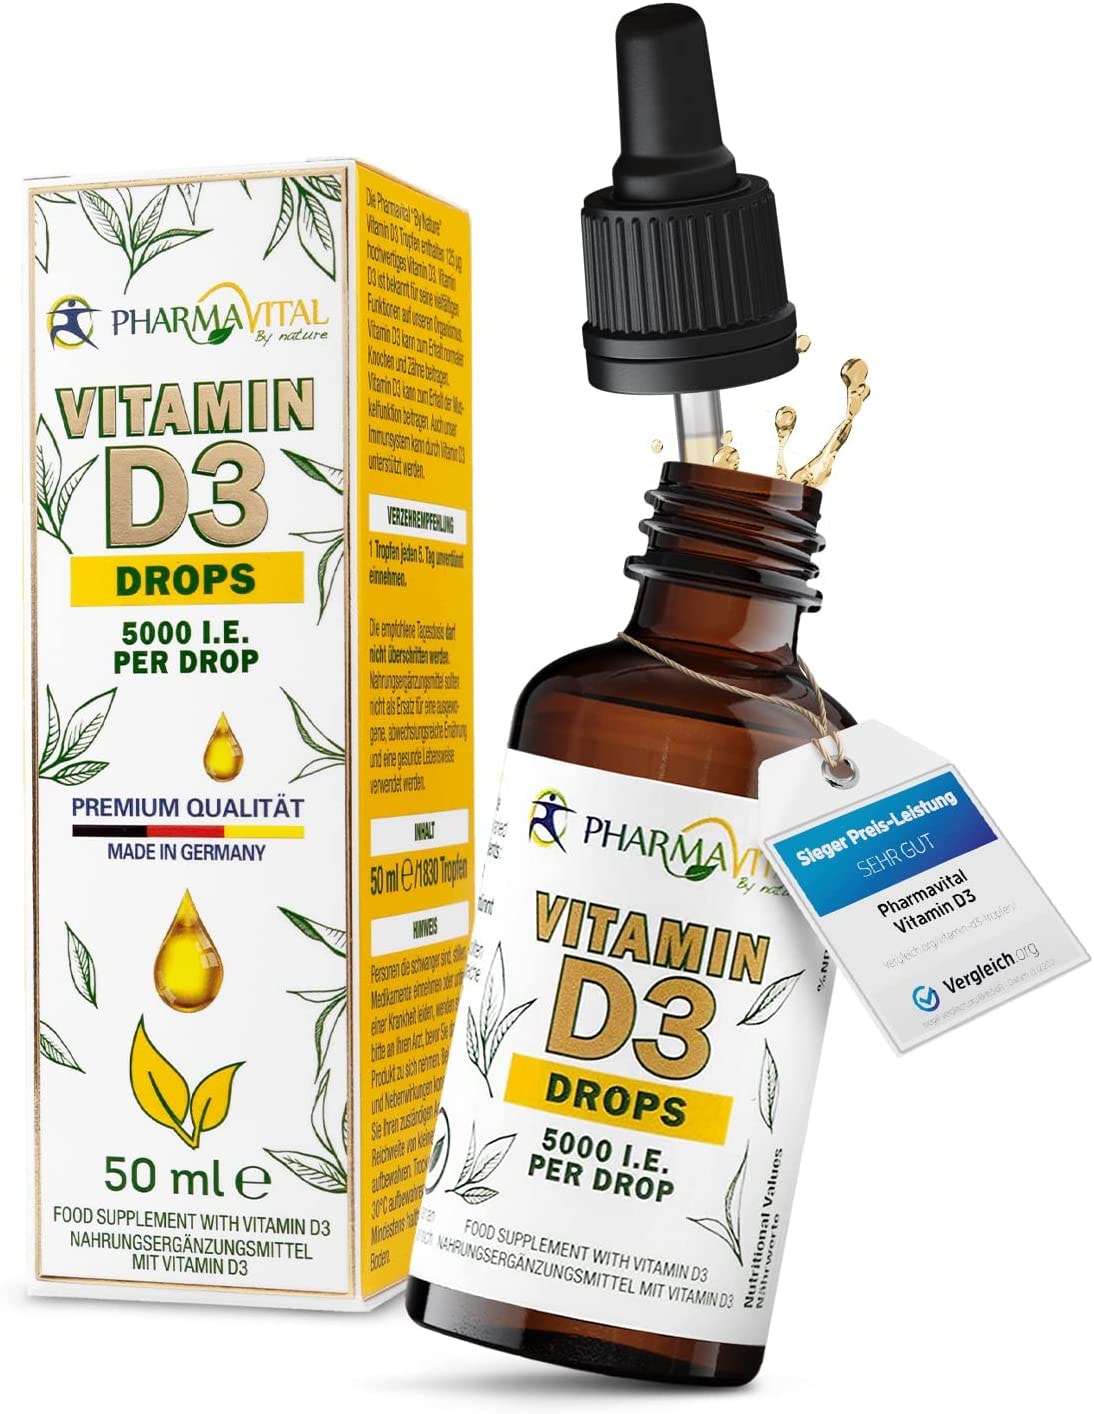 Pharmavital Vitamin D3 5000 50ml flüssig (1830 Tropfen) - Laborgeprüfte 5000 I.E. pro Tropfen - Hochwertig: sehr hohe Stabilität - Hochdosiert, in Deutschland produziert